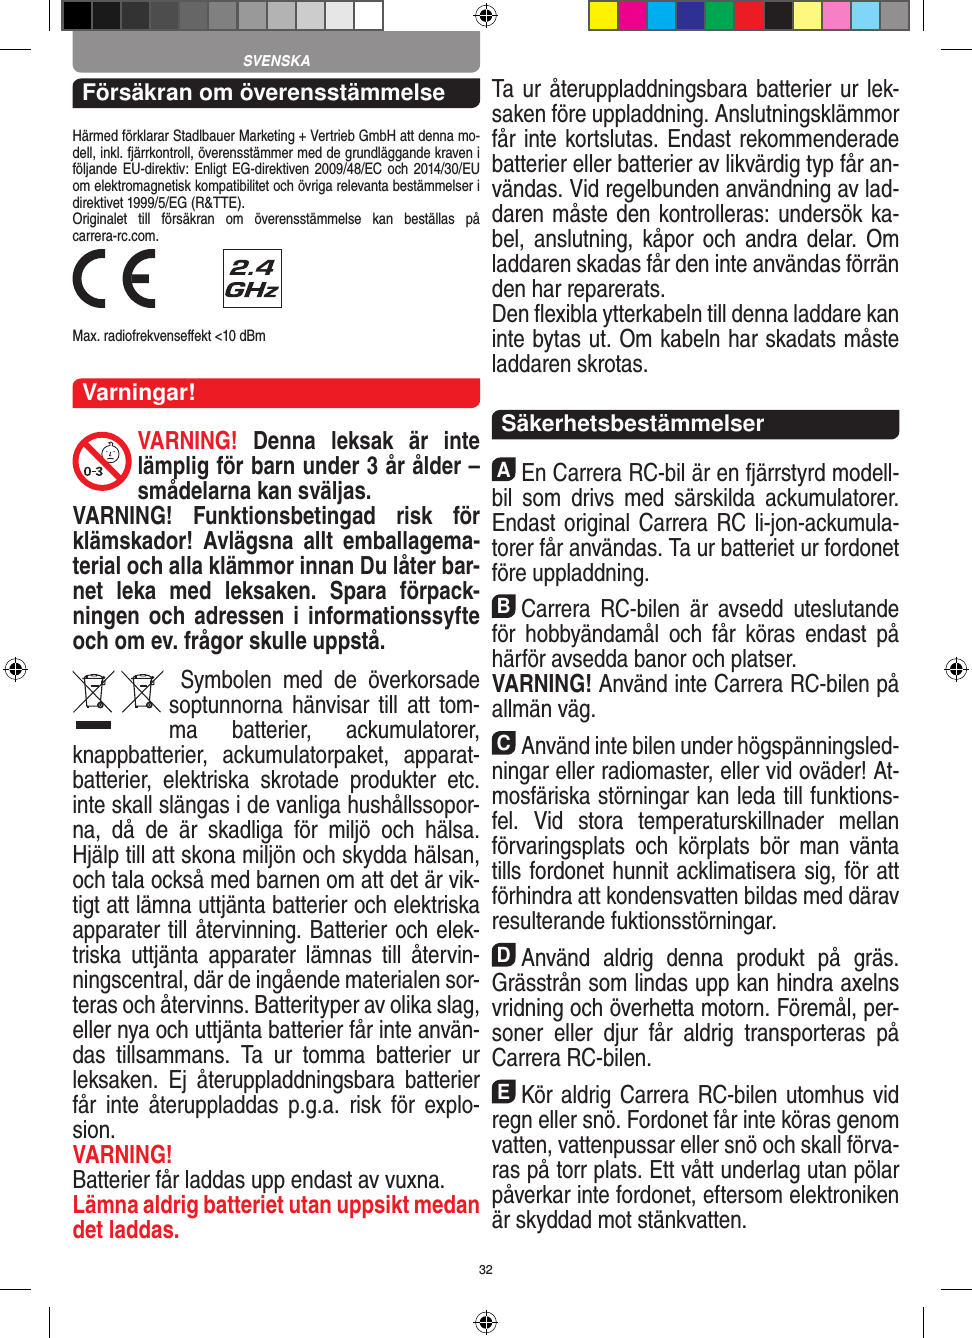 32Försäkran om överensstämmelseHärmed förklarar Stadlbauer Marketing + Vertrieb GmbH att denna mo-dell, inkl. fjärrkontroll, överensstämmer med de grundläggande kraven i följande EU-direktiv: Enligt EG-direktiven 2009/48/EC och 2014/30/EU om elektromagnetisk kompatibilitet och övriga relevanta bestämmelser i direktivet 1999/5/EG (R&amp;TTE). Originalet  till  försäkran  om  överensstämmelse  kan  beställas  på  carrera-rc.com. Max. radiofrekvenseﬀekt &lt;10 dBmVarningar!VARNING!  Denna  leksak  är  inte lämplig för barn under 3 år ålder – smådelarna kan sväljas.VARNING!  Funktionsbetingad  risk  för klämskador!  Avlägsna  allt  emballagema-terial och alla klämmor innan Du låter bar-net  leka  med  leksaken.  Spara  förpack-ningen och adressen i informationssyfte och om ev. frågor skulle uppstå.  Symbolen  med  de  överkorsade soptunnorna hänvisar till  att  tom-ma  batterier,  ackumulatorer, knappbatterier,  ackumulatorpaket,  apparat-batterier,  elektriska  skrotade  produkter  etc. inte skall slängas i de vanliga hushållssopor-na,  då  de  är  skadliga  för  miljö  och  hälsa. Hjälp till att skona miljön och skydda hälsan, och tala också med barnen om att det är vik-tigt att lämna uttjänta batterier och elektriska apparater till återvinning. Batterier och elek-triska  uttjänta  apparater  lämnas  till  återvin-ningscentral, där de ingående materialen sor-teras och återvinns. Batterityper av olika slag, eller nya och uttjänta batterier får inte använ-das  tillsammans.  Ta  ur  tomma  batterier  ur leksaken.  Ej  återuppladdningsbara  batterier får  inte  återuppladdas  p.g.a.  risk  för  explo-sion. VARNING!Batterier får laddas upp endast av vuxna.Lämna aldrig batteriet utan uppsikt medan det laddas. Ta ur återuppladdningsbara batterier ur lek-saken före uppladdning. Anslutningsklämmor får inte kortslutas. Endast rekommenderade batterier eller batterier av likvärdig typ får an-vändas. Vid regelbunden användning av lad-daren måste den kontrolleras: undersök ka-bel, anslutning,  kåpor  och andra delar.  Om laddaren skadas får den inte användas förrän den har reparerats. Den ﬂexibla ytterkabeln till denna laddare kan inte bytas ut. Om kabeln har skadats måste laddaren skrotas.  SäkerhetsbestämmelserAEn Carrera RC-bil är en fjärrstyrd modell-bil  som  drivs  med  särskilda  ackumulatorer. Endast original Carrera RC li-jon-ackumula-torer får användas. Ta ur batteriet ur fordonet före uppladdning.BCarrera  RC-bilen  är  avsedd  uteslutande för  hobbyändamål  och  får  köras  endast  på härför avsedda banor och platser. VARNING! Använd inte Carrera RC-bilen på allmän väg.CAnvänd inte bilen under högspänningsled-ningar  eller radiomaster, eller vid oväder! At-mosfäriska störningar kan leda till funktions-fel.  Vid  stora  temperaturskillnader  mellan förvaringsplats  och  körplats  bör  man  vänta tills fordonet hunnit acklimatisera sig, för att förhindra att kondensvatten bildas med därav resulterande fuktionsstörningar.DAnvänd  aldrig  denna  produkt  på  gräs. Grässtrån som lindas upp kan hindra axelns vridning och överhetta motorn. Föremål, per-soner  eller  djur  får  aldrig  transporteras  på Carrera RC-bilen.EKör aldrig Carrera RC-bilen utomhus vid regn eller snö. Fordonet får inte köras genom vatten, vattenpussar eller snö och skall förva-ras på torr plats. Ett vått underlag utan pölar påverkar inte fordonet, eftersom elektroniken är skyddad mot stänkvatten.SVENSKA